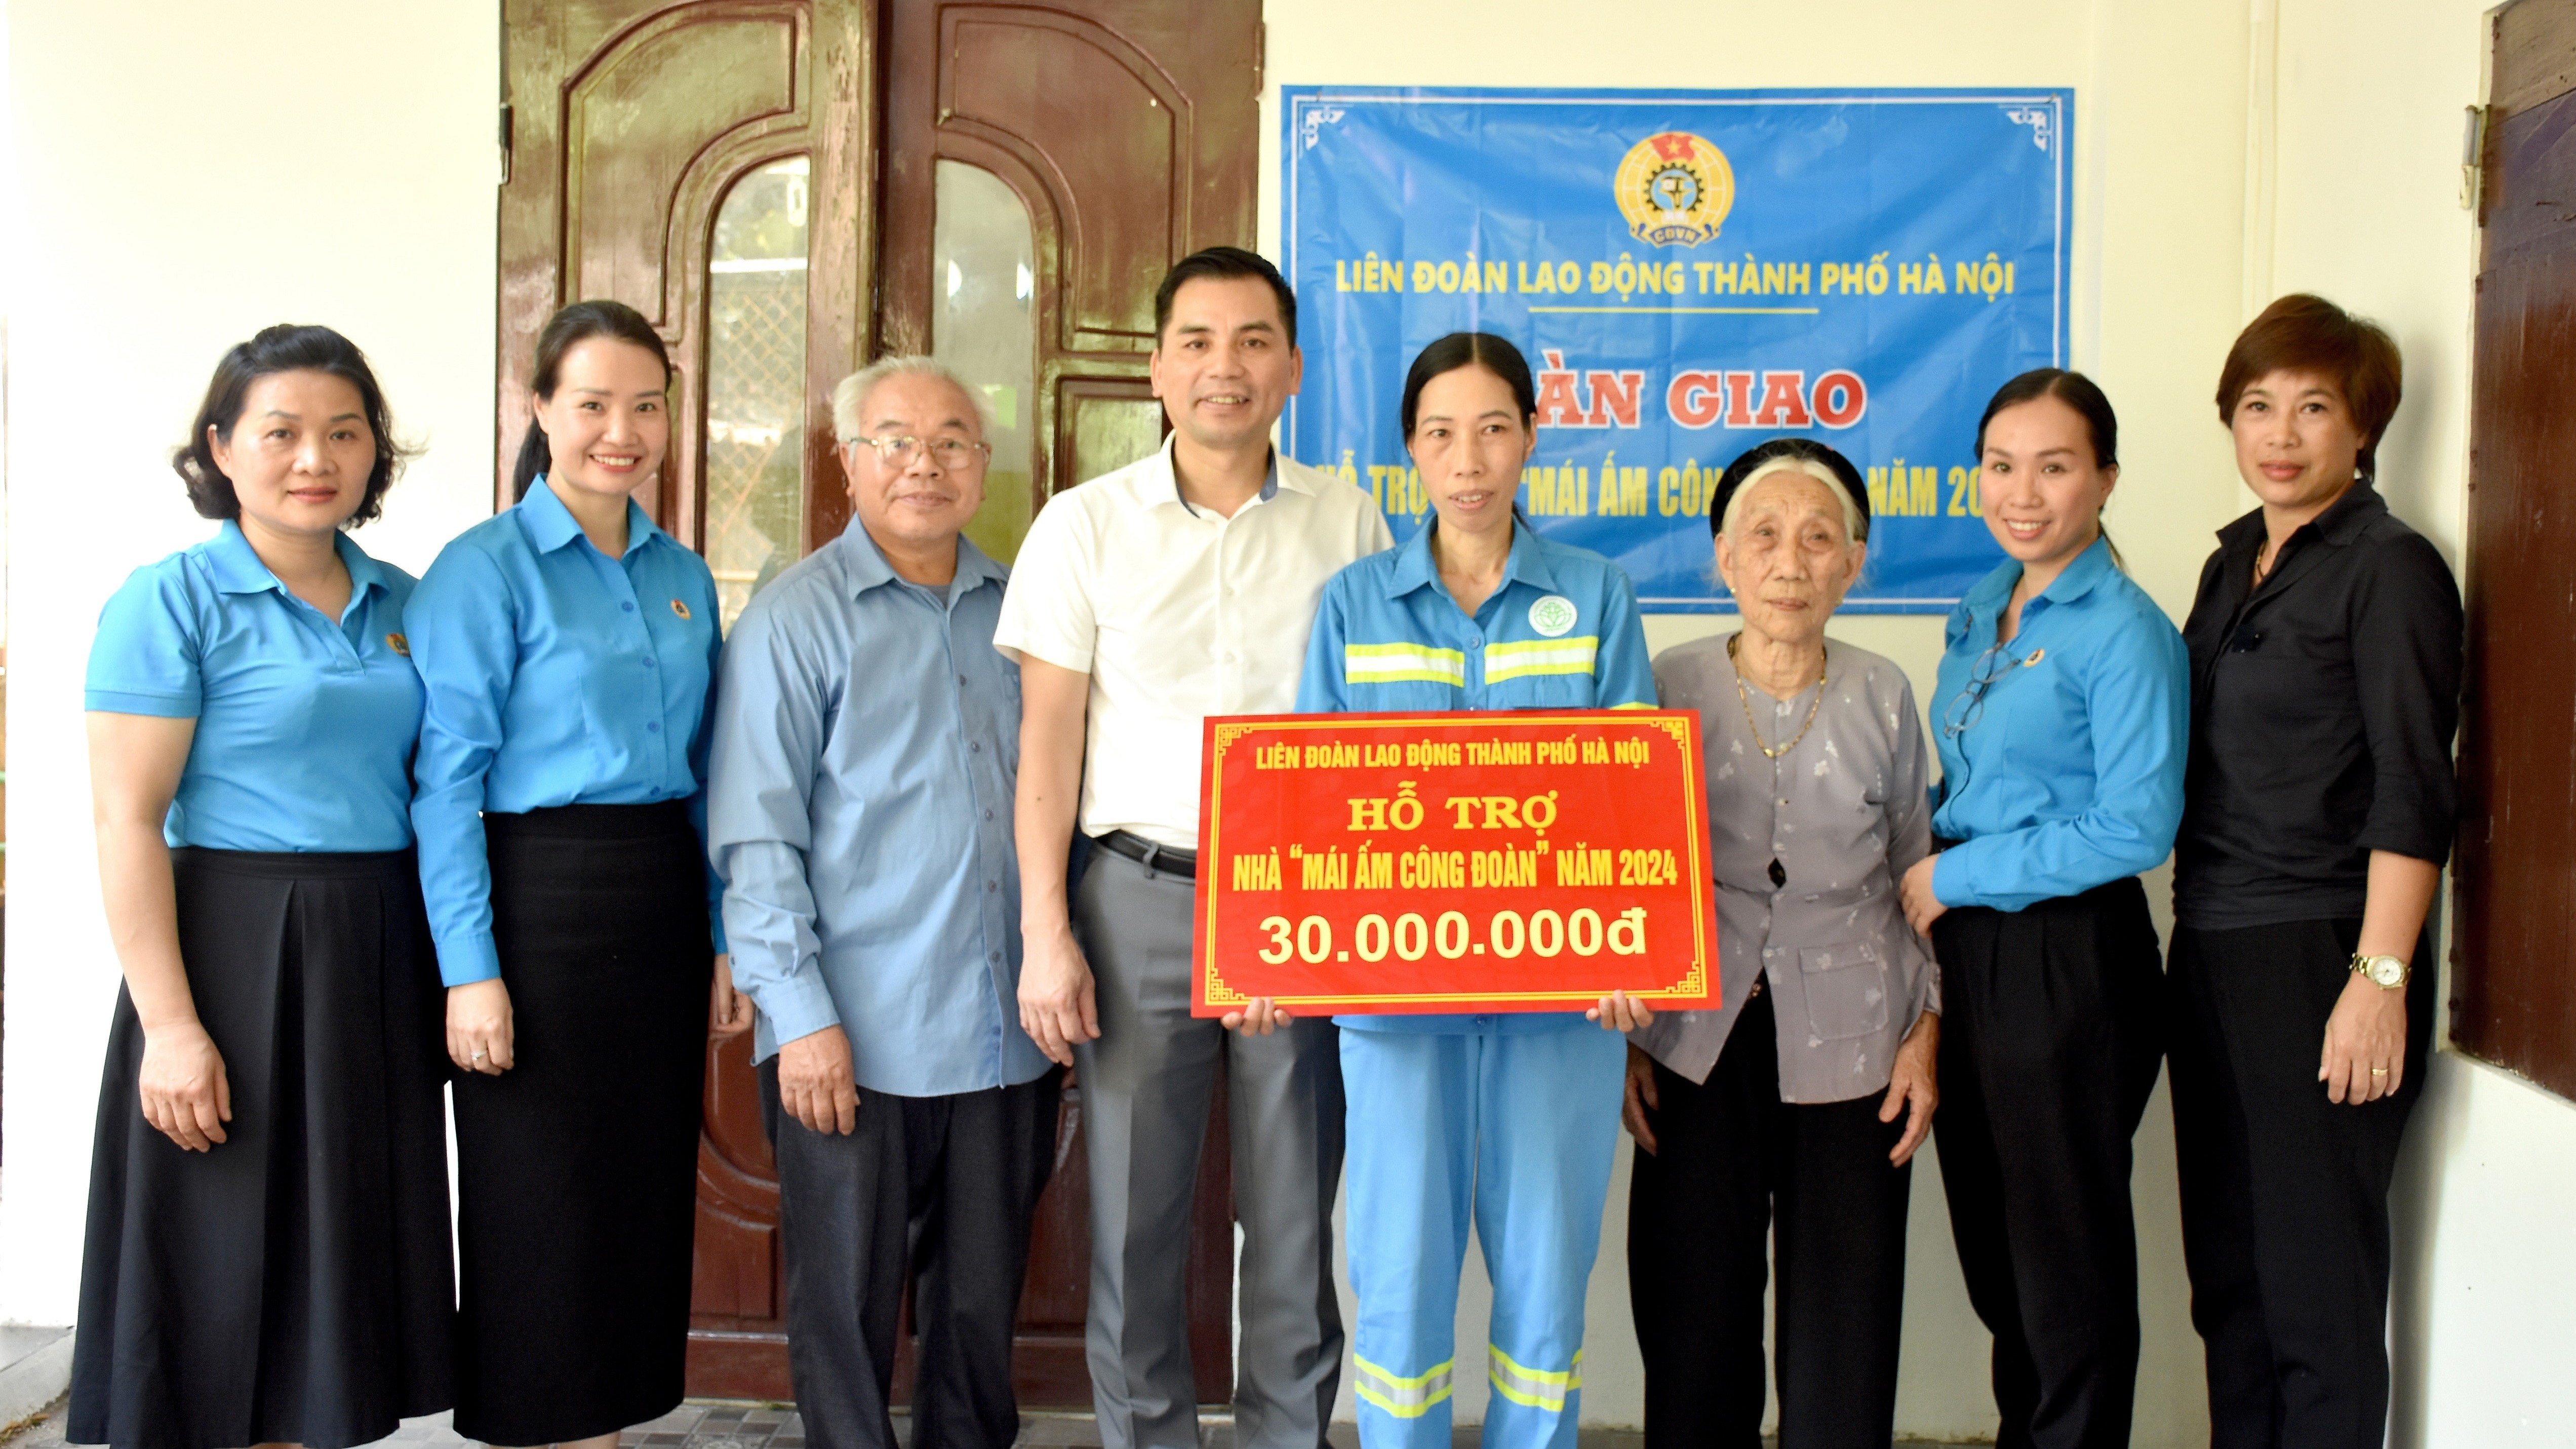 Trao hỗ trợ “Mái ấm Công đoàn” cho đoàn viên ngành Xây dựng Hà Nội